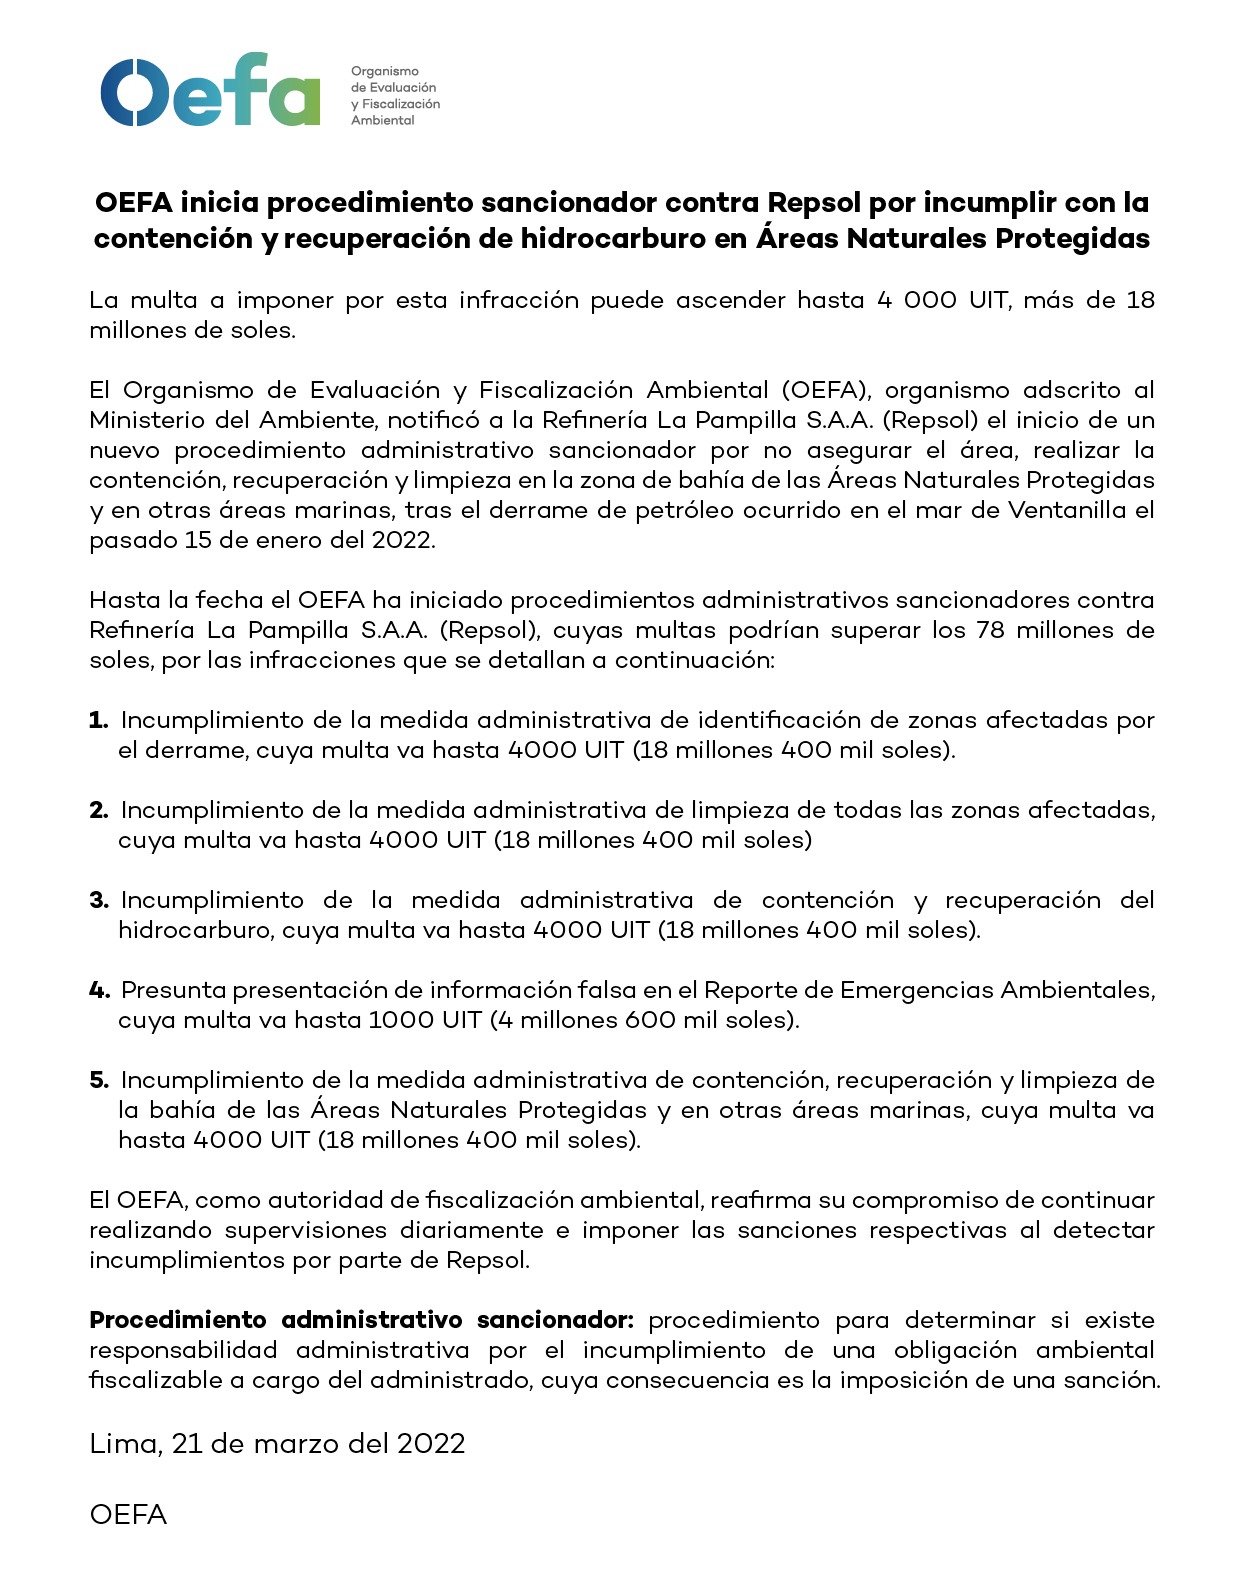 OEFA abre nuevo procedimiento administrativo sancionador contra Repsol